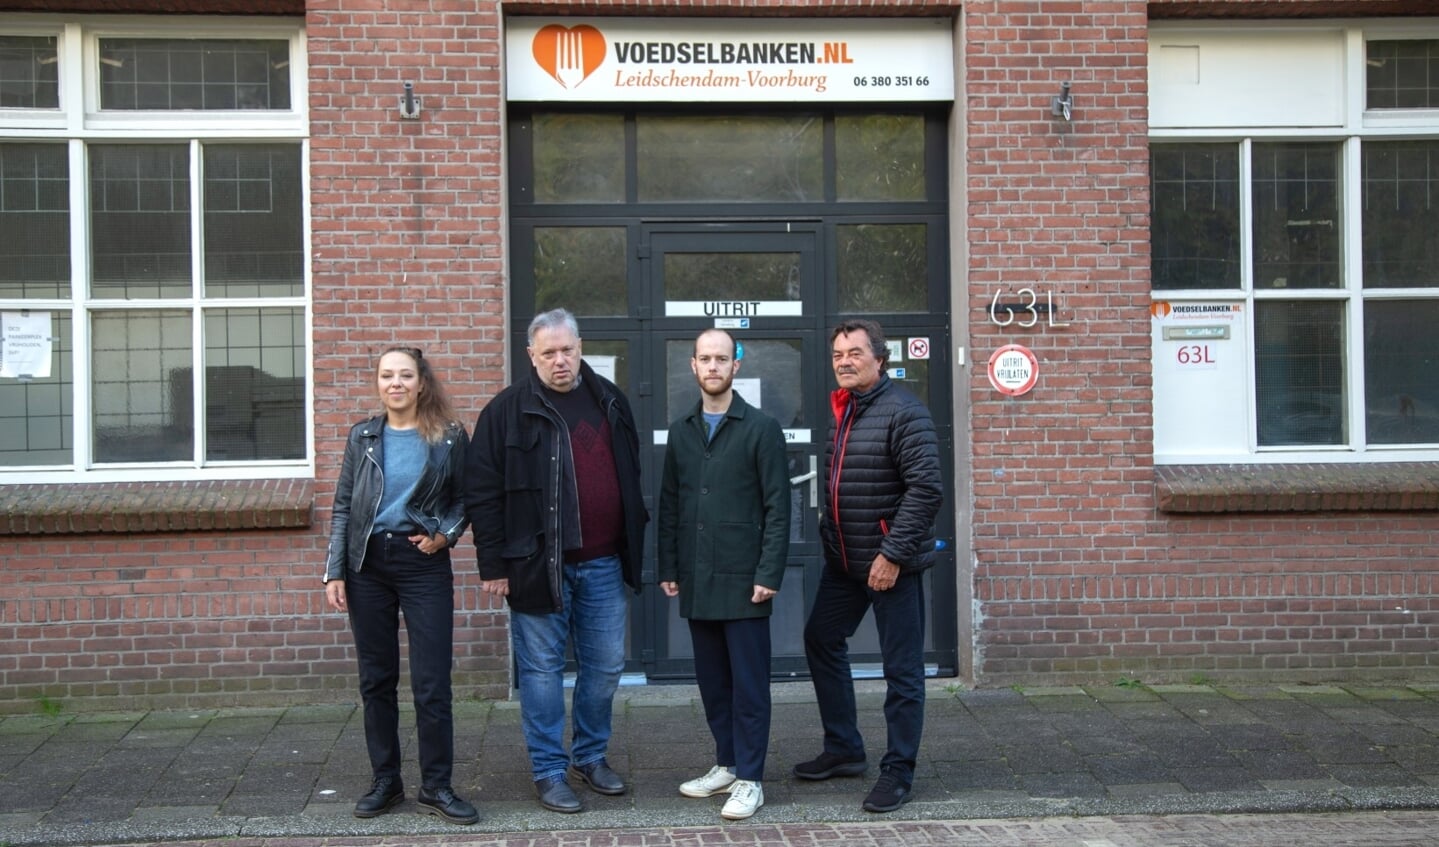 Suzanne Kok (PvdA), Ed van der Schaft (SP), Frank Wilschut (CU) en Kees Elenbaas (GroenLinks) bij de Voedselbank (foto: Wilfried v.d. Eijnden).